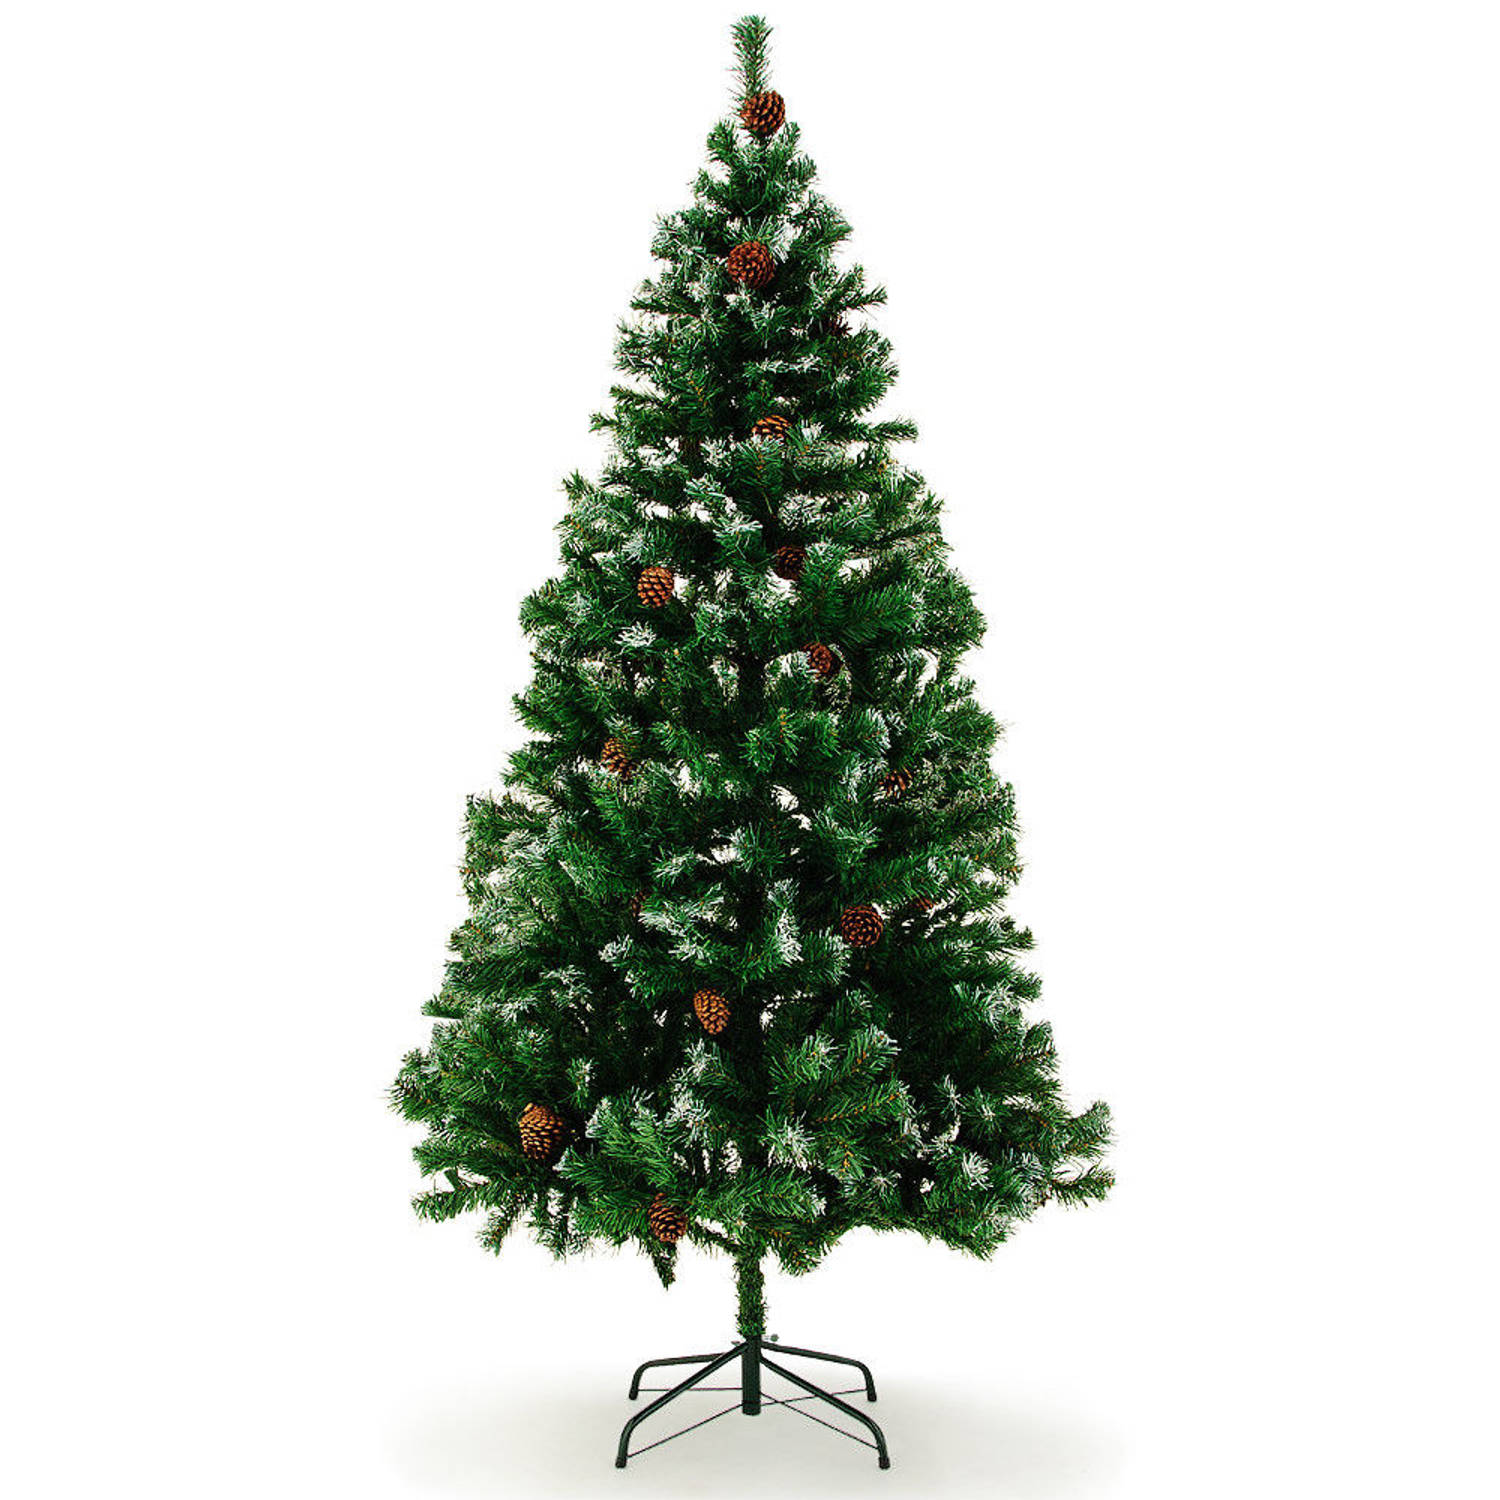 Kunstkerstboom, kerstboom, 180cm, met dennenappels en besneeuwde takken